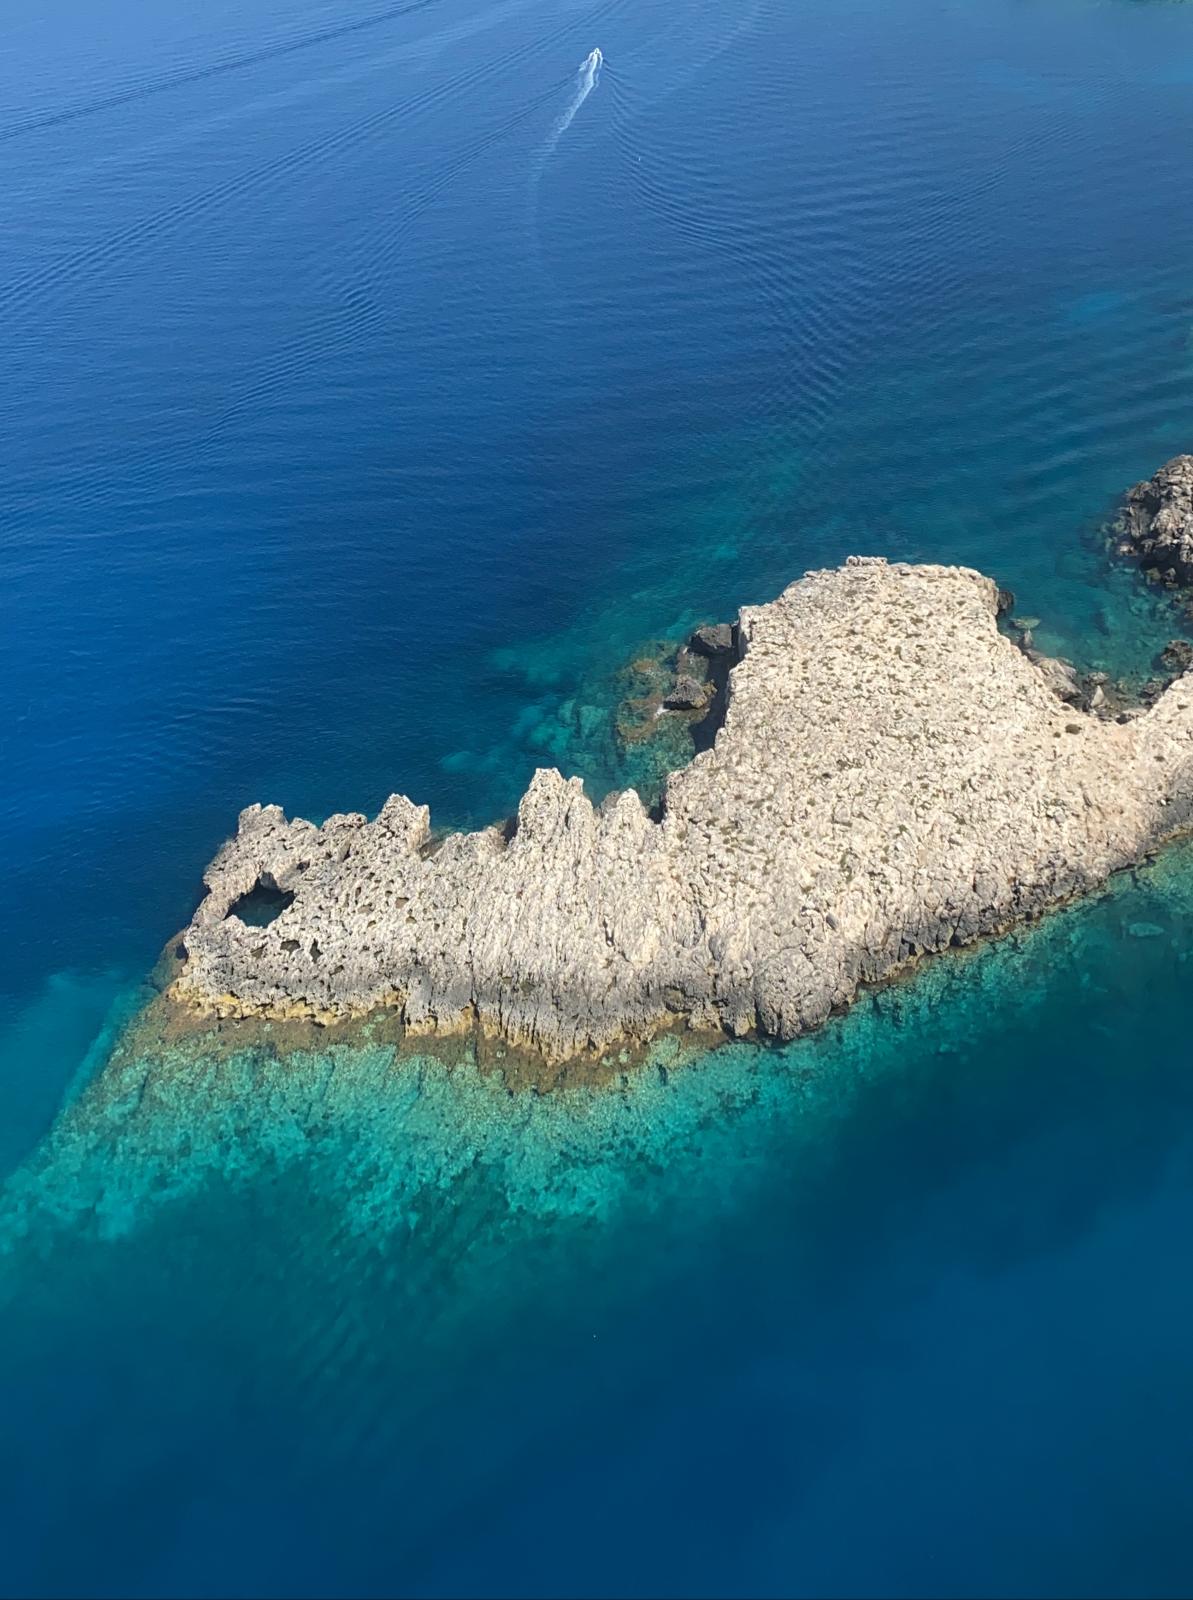 Galleria Bandiera Blu 2020 alle Isole Tremiti  Emiliano: “in Puglia grande risultato, siamo orgogliosi” - Diapositiva 4 di 8